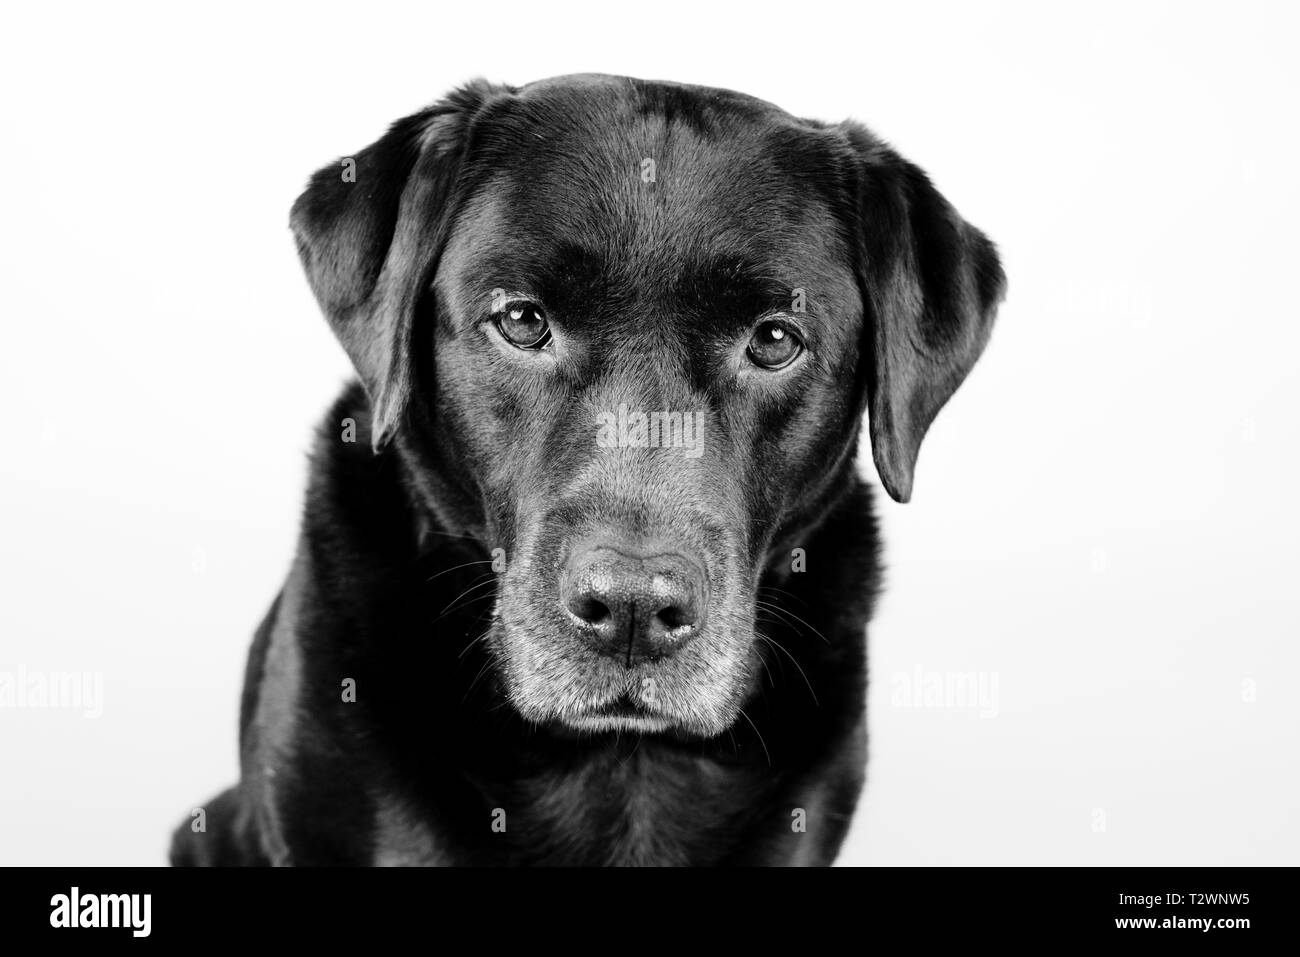 Ritratto in bianco e nero di un vecchio brown labrador cane, fissando nella fotocamera. davanti ad un sfondo bianco Foto Stock